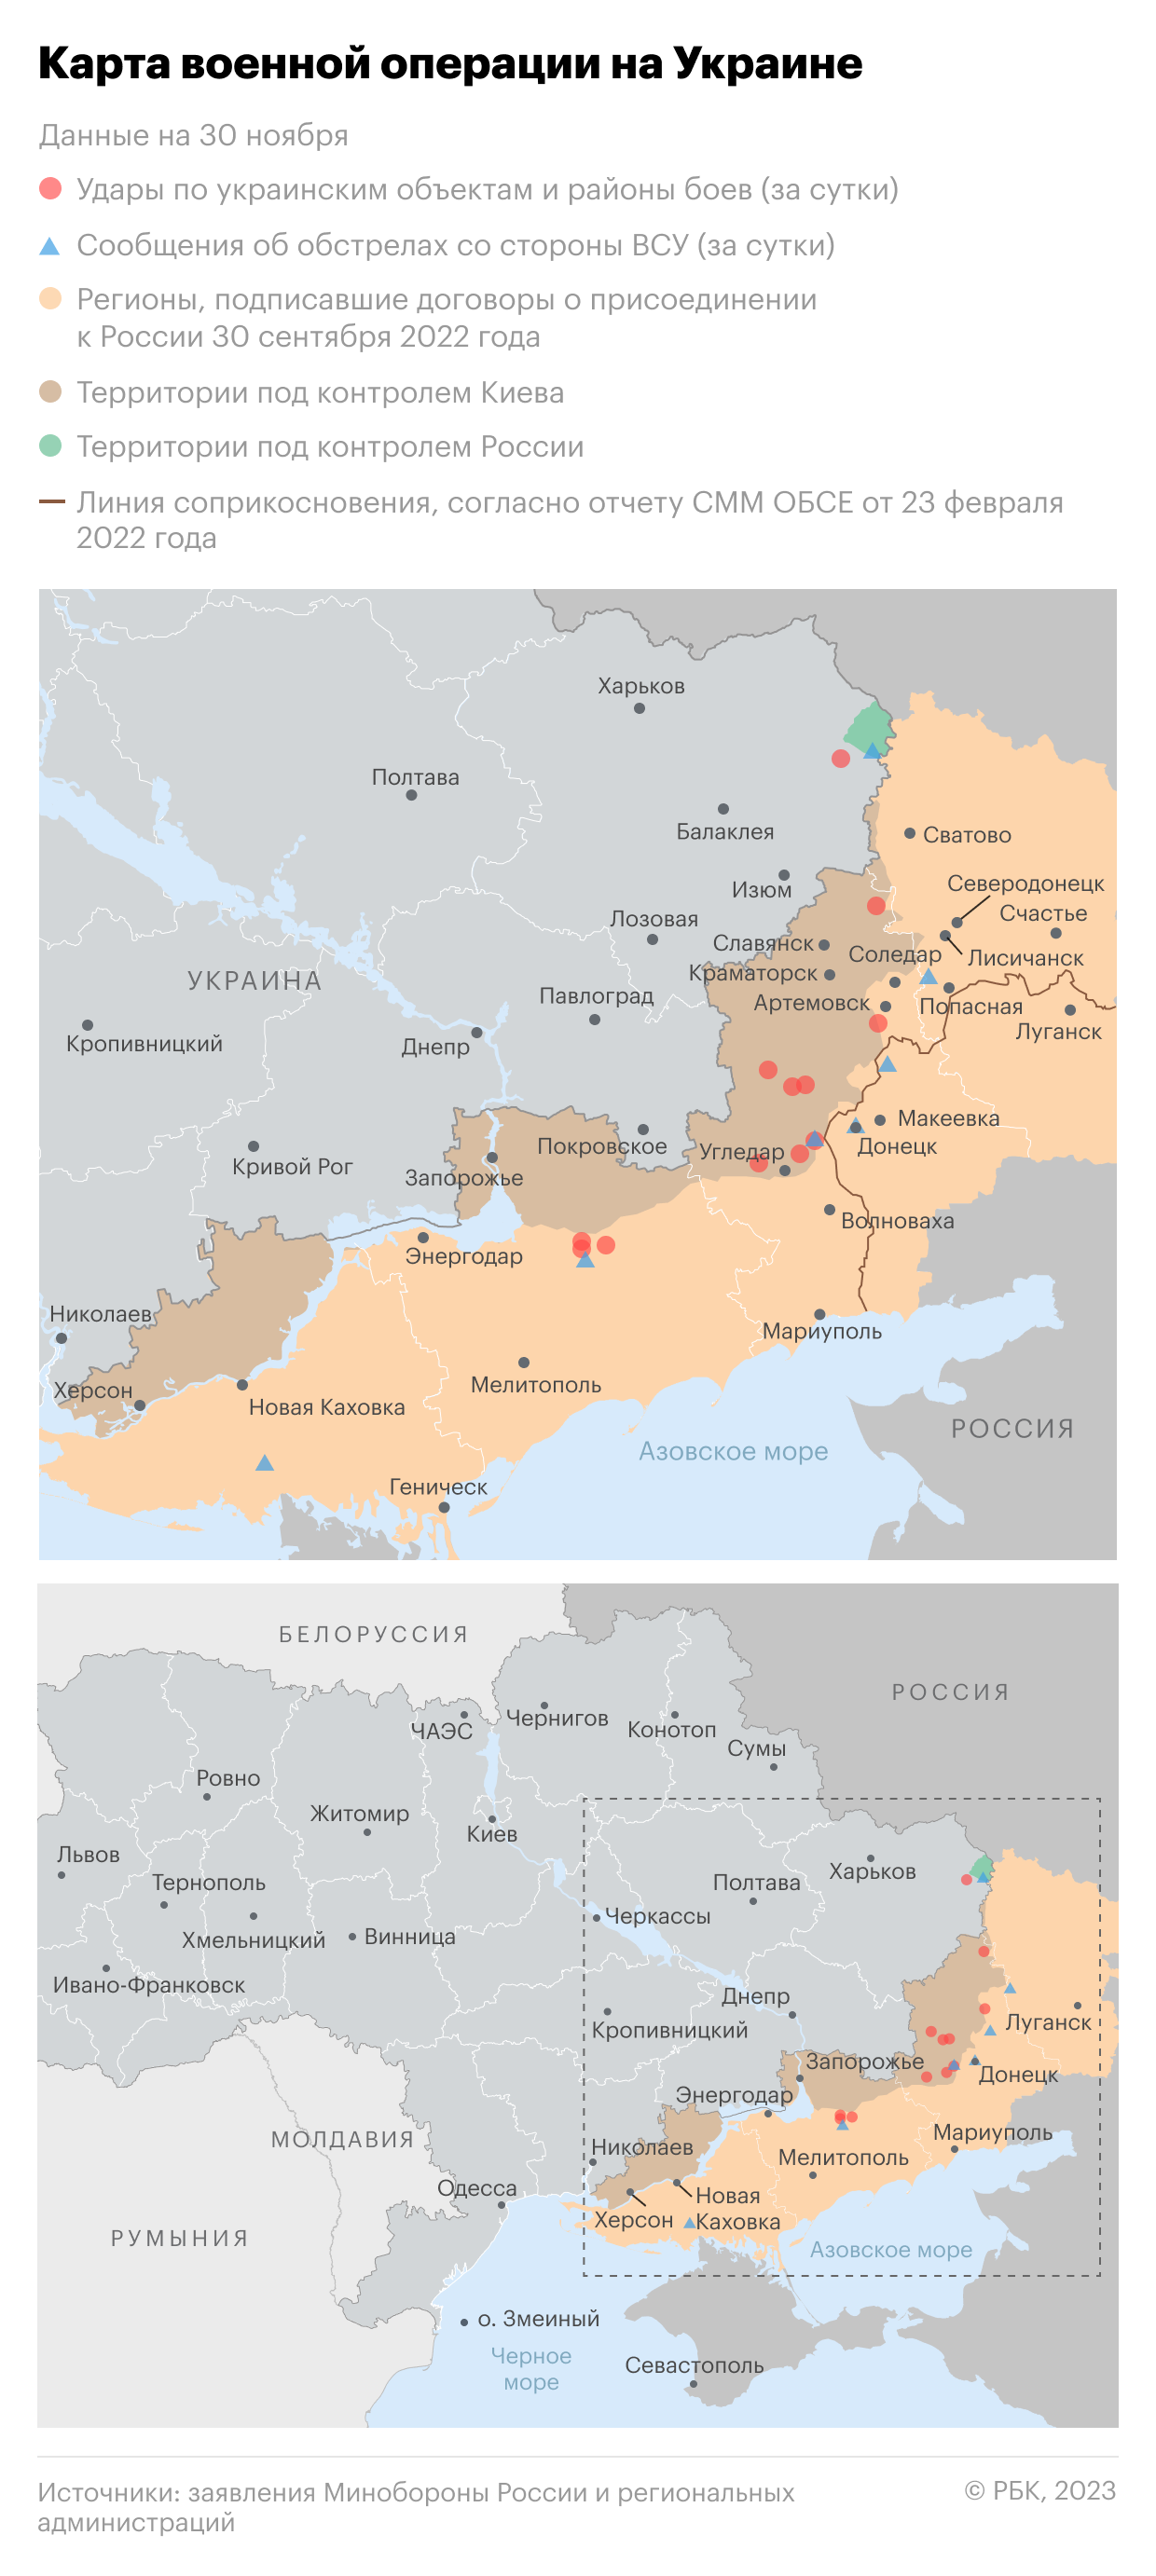 Военная операция на Украине. Карта на 30 ноября